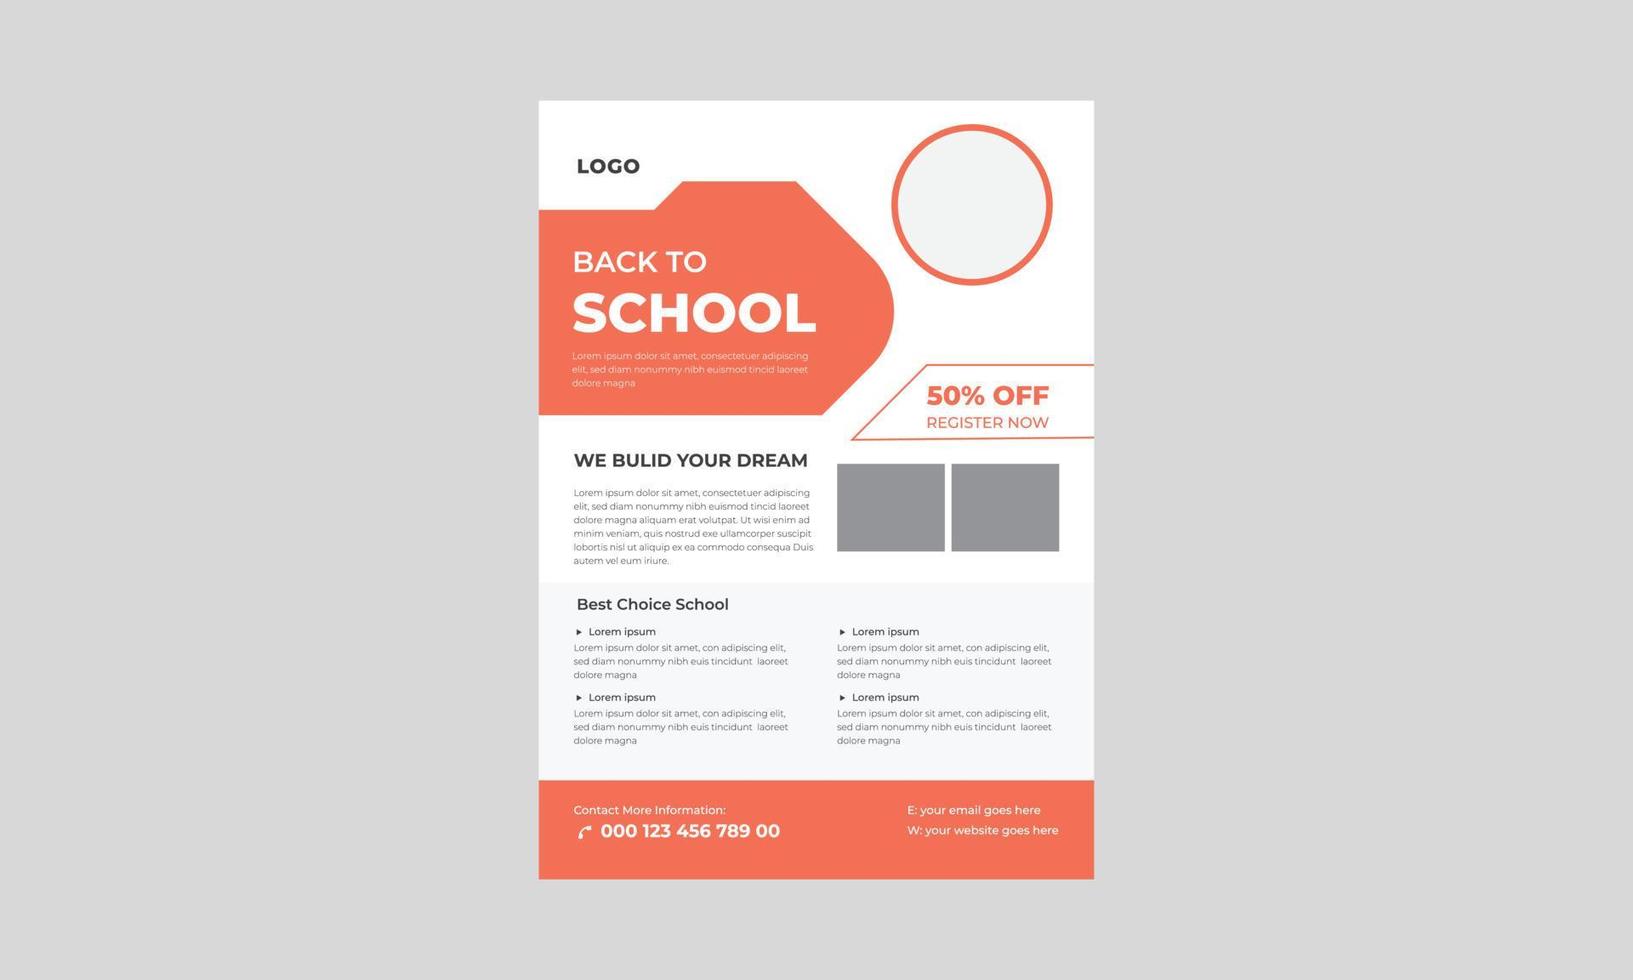 design av flygblad för antagning till skolan, reklamblad för antagning till skolan, flygblad för antagning till skolan, flygblad för antagning till skolan för barn. vektor